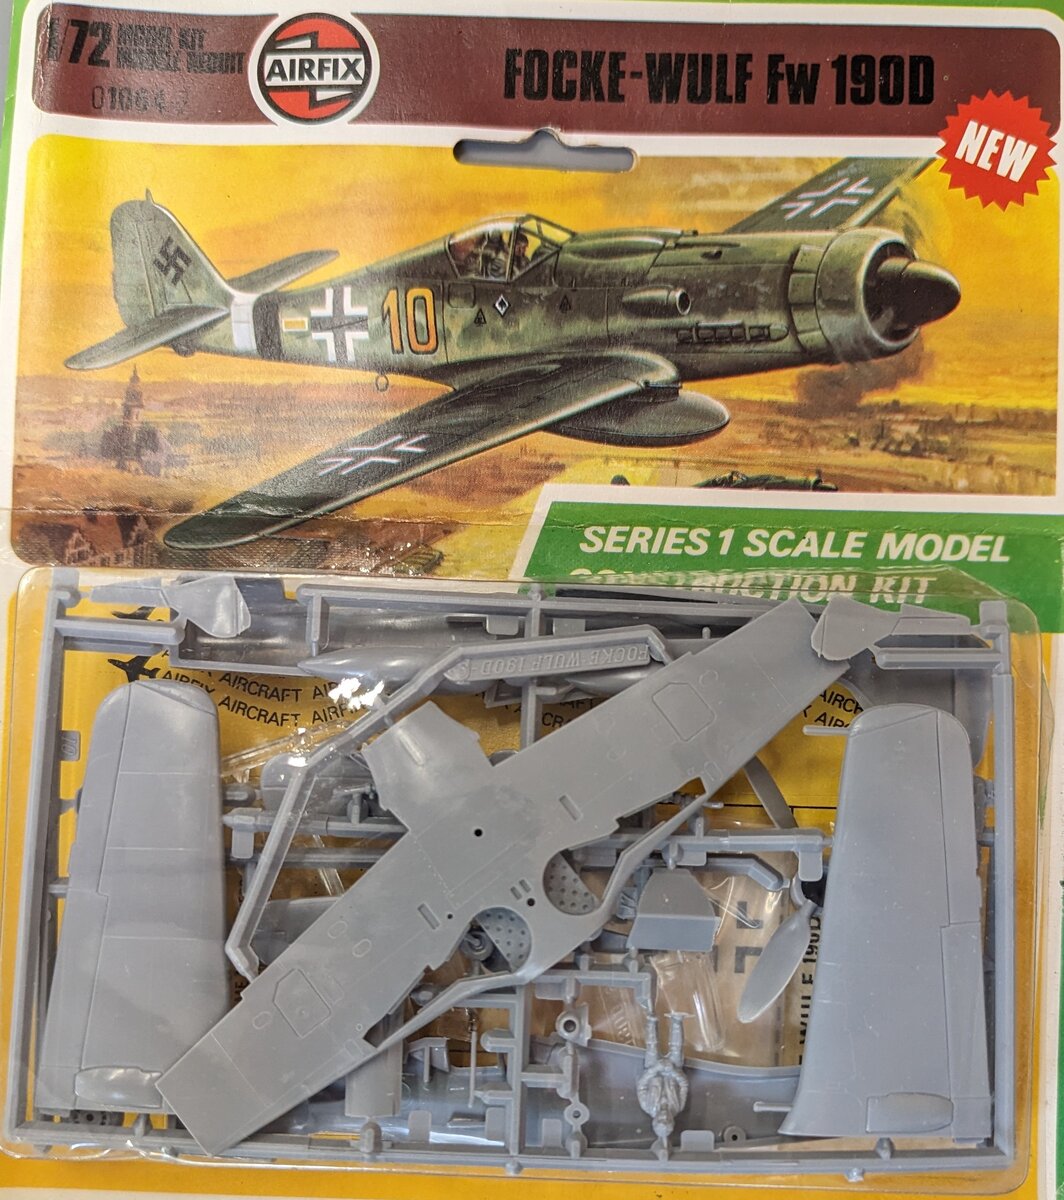 Airfix Products O1064-7 1:72 Focke-Wulf Fw190D Plastic Model Kit